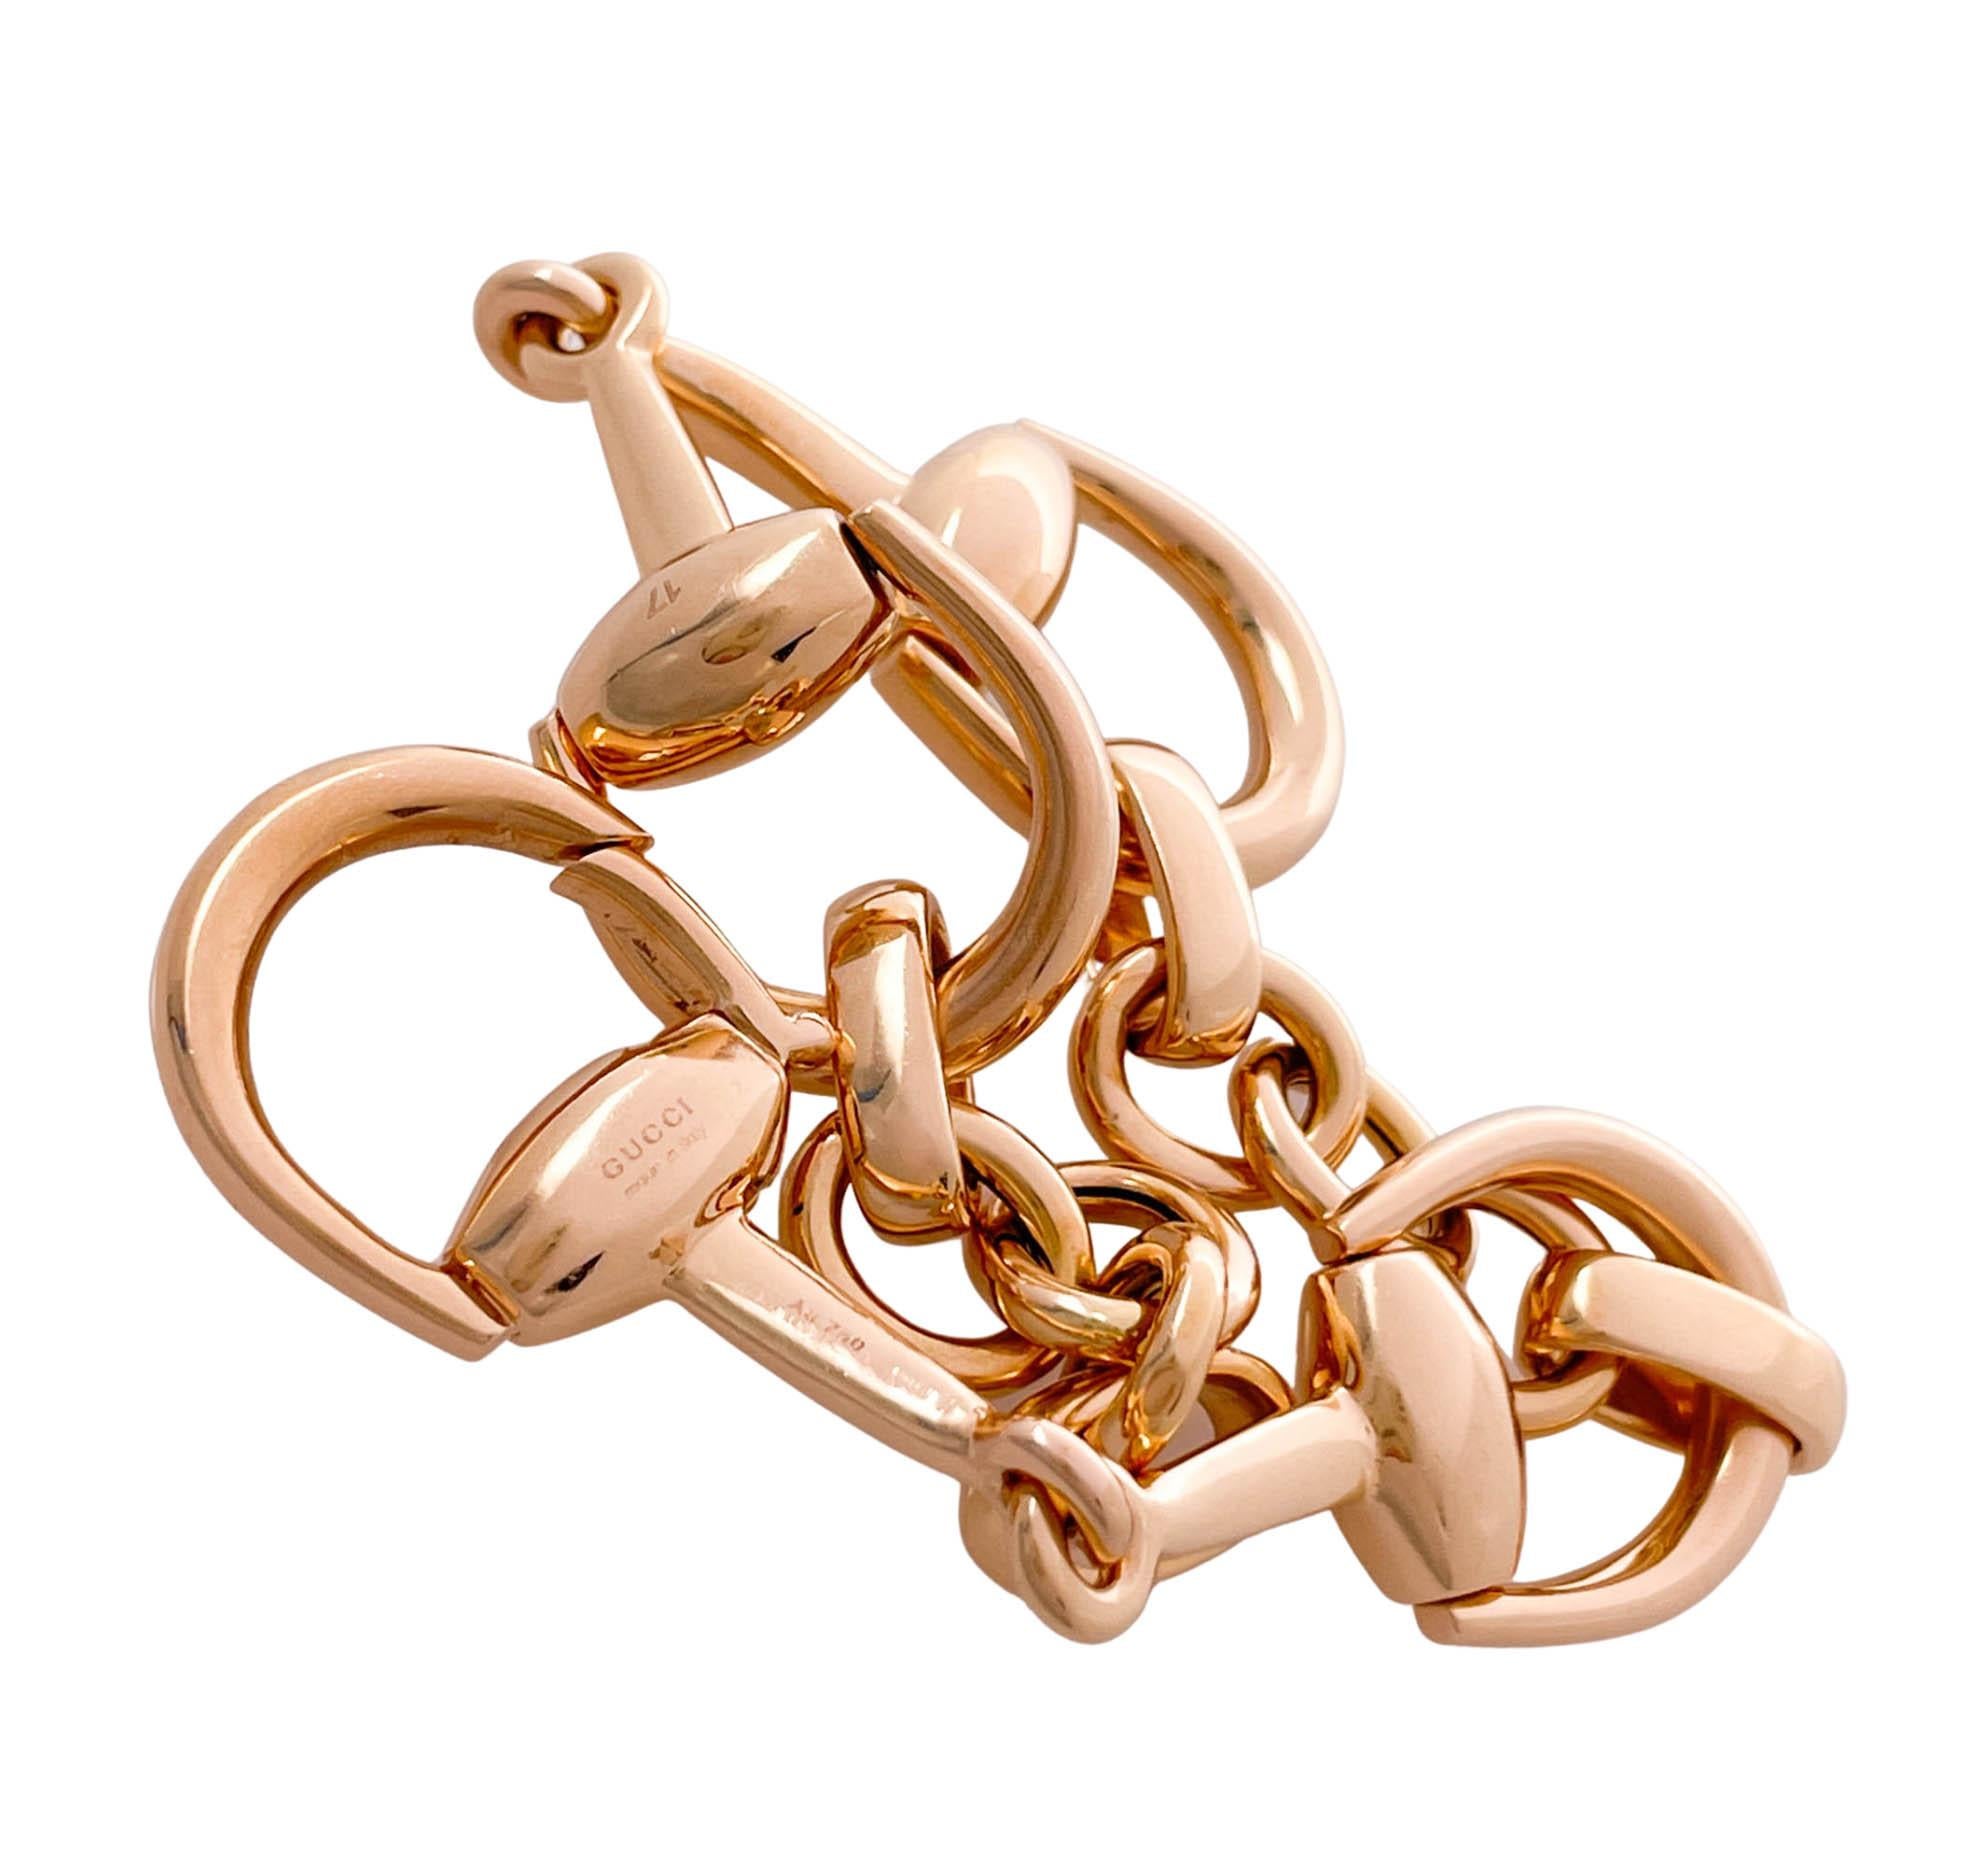 Jay Feders Vintage CIRCA 1990er Jahre 18k Rose Gold Horsebit Link Bracelet
Das Armband ist 7,5 Zoll lang; die breitesten Glieder sind 16,55 mm.
Das Gesamtgewicht des Armbands beträgt 28.6 Gramm.
Punzierungen: Gucci, Made in Italy, 17, Au 750.

Bitte